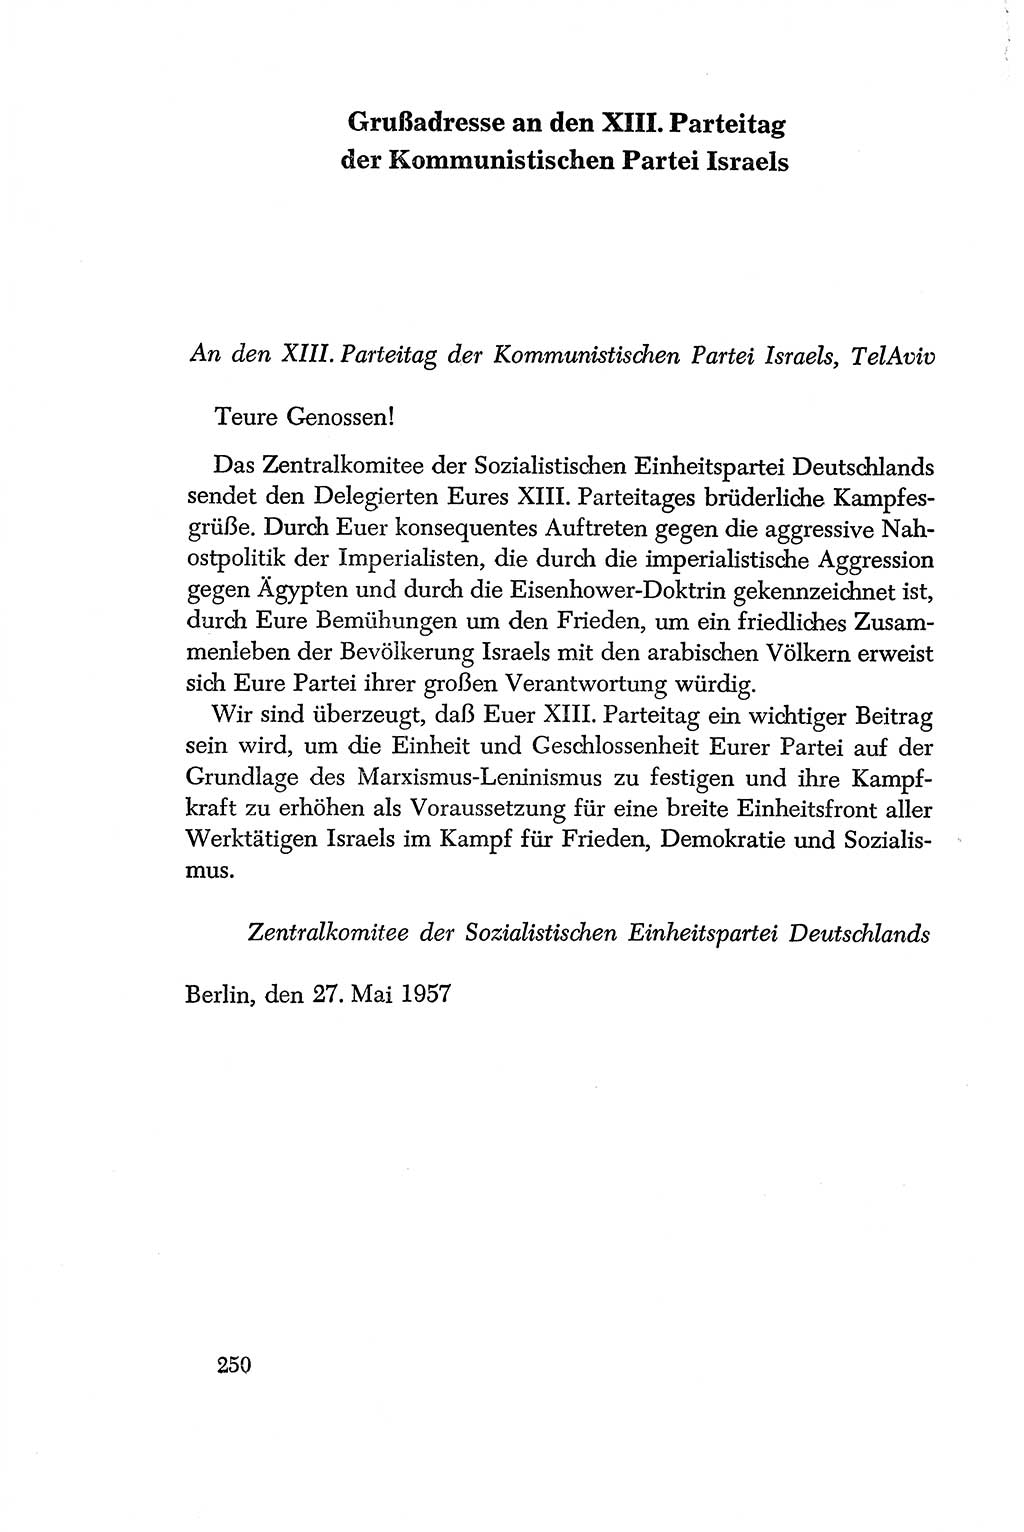 Dokumente der Sozialistischen Einheitspartei Deutschlands (SED) [Deutsche Demokratische Republik (DDR)] 1956-1957, Seite 250 (Dok. SED DDR 1956-1957, S. 250)